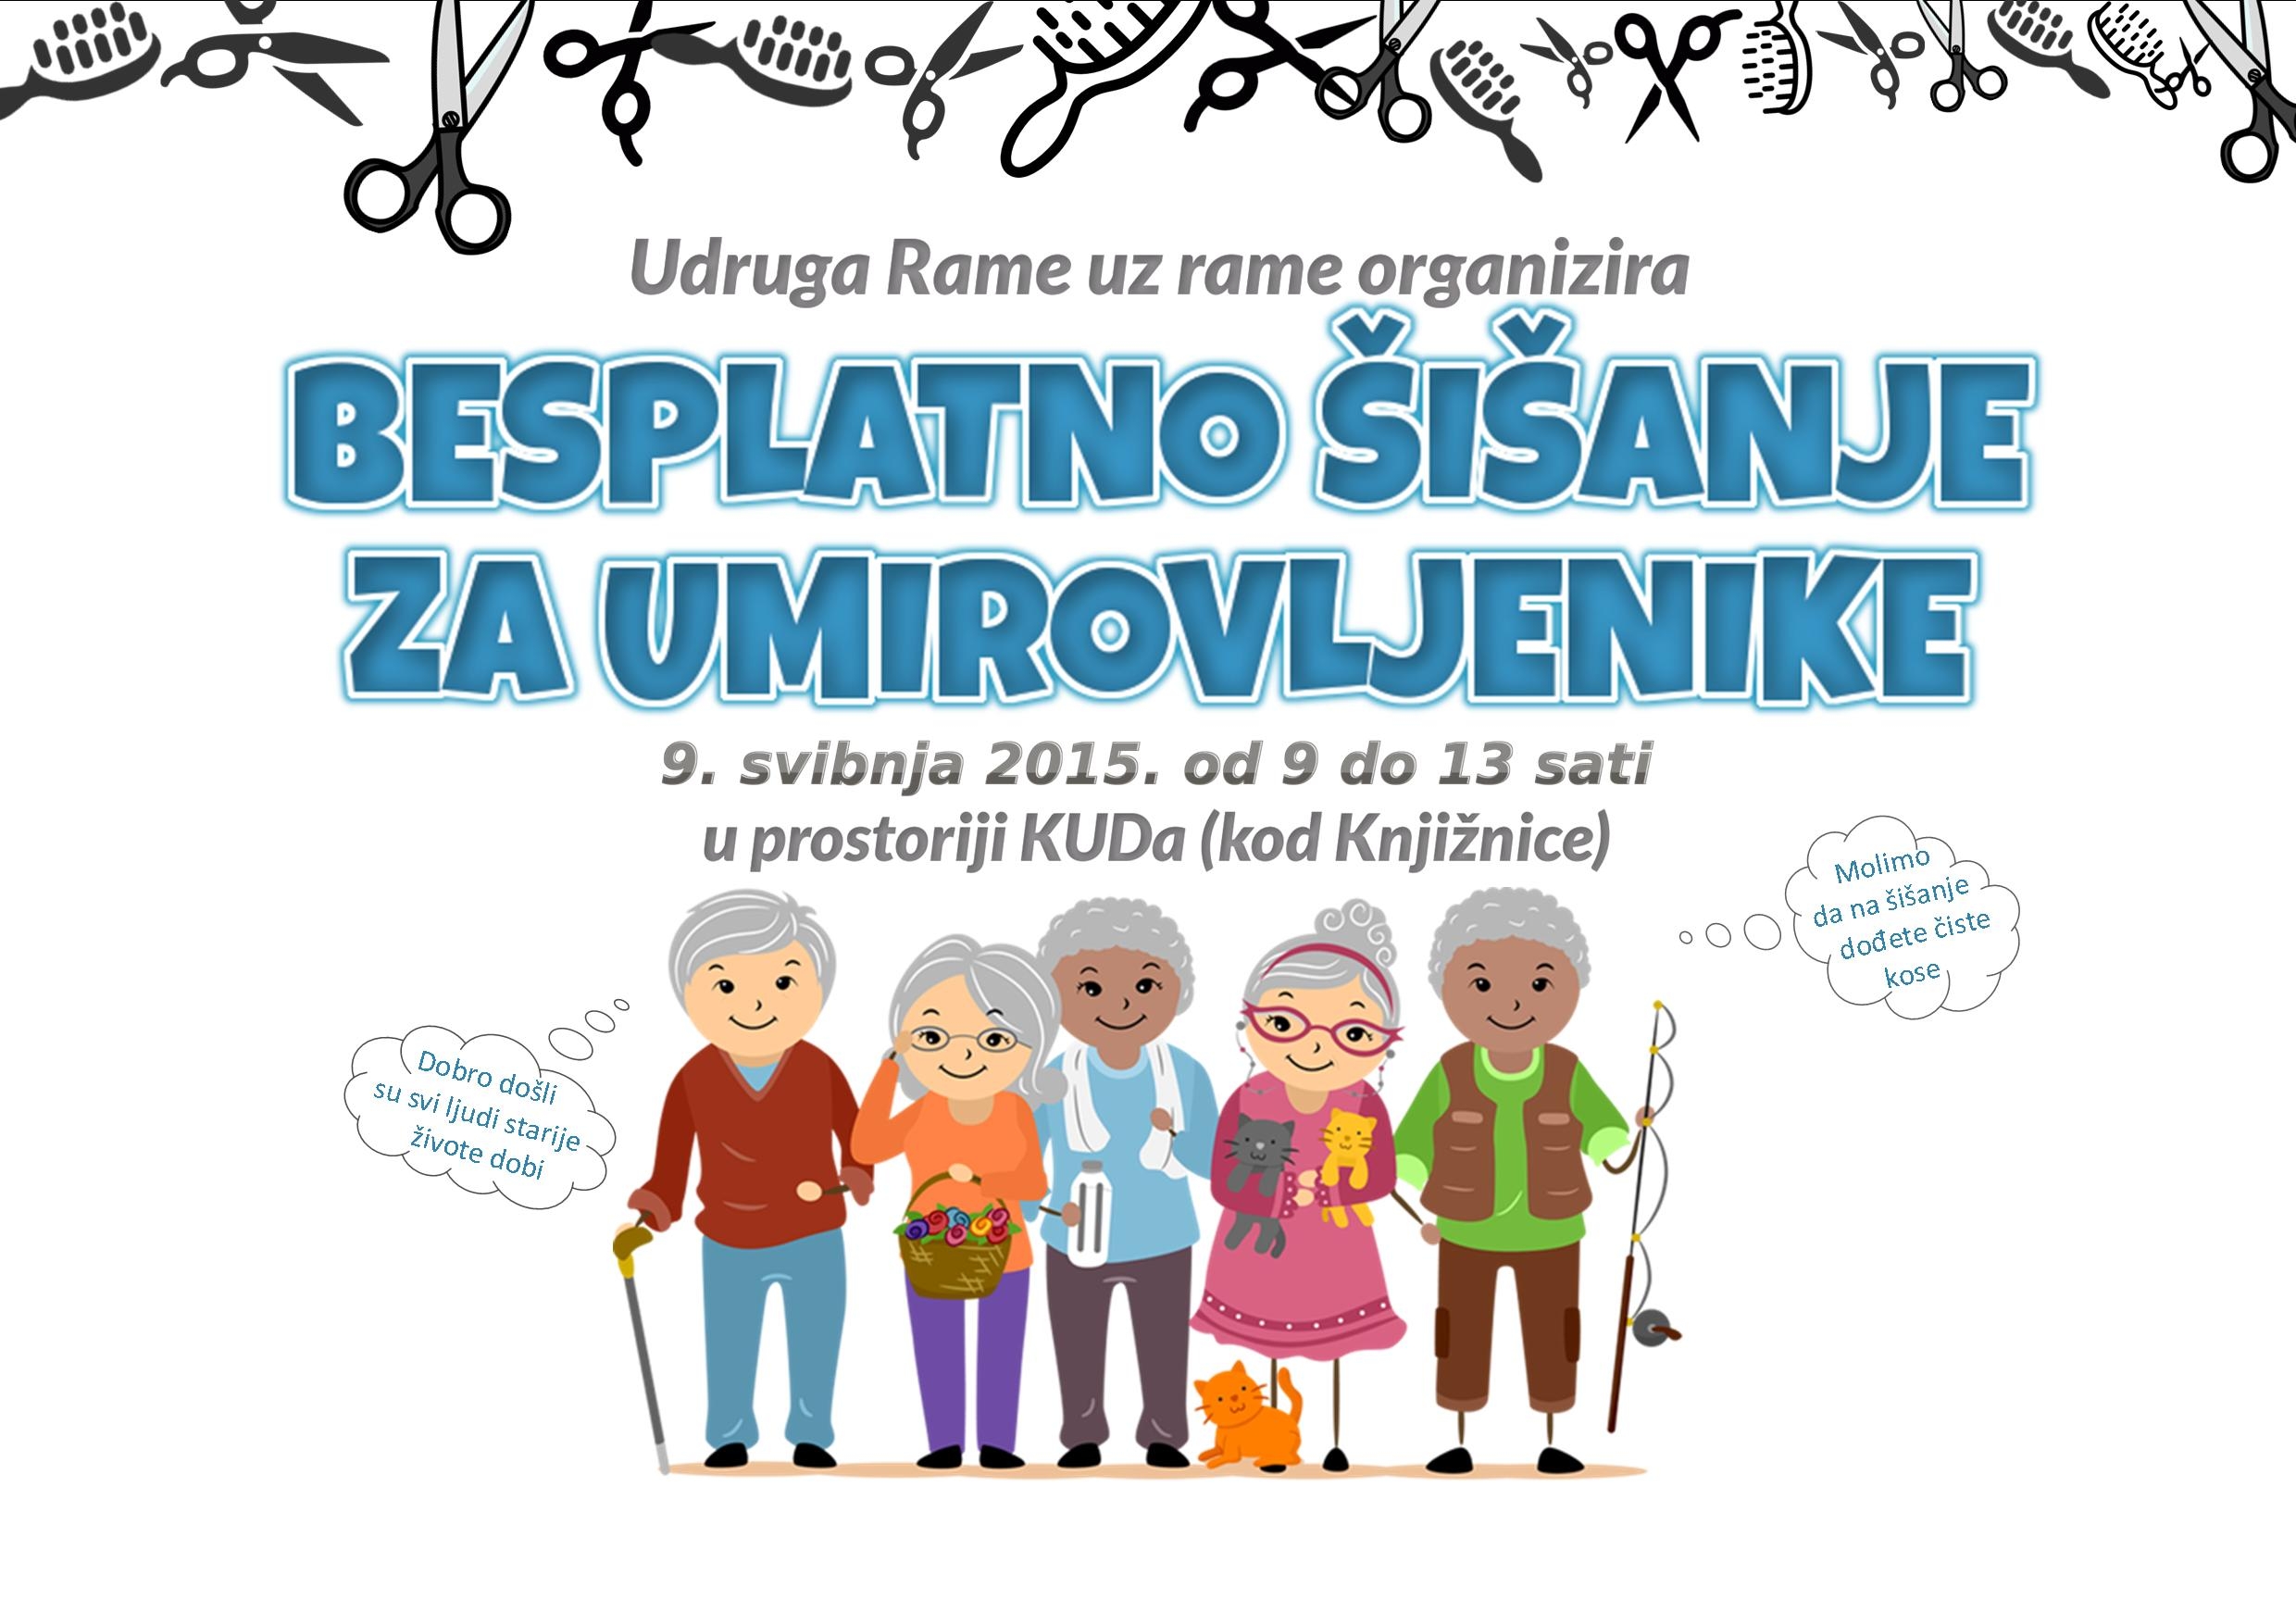 <p>Udruga Rame uz rame organizira akciju besplatnog šišanja za umirovljenike u Čepinu, 9. svibnja 2015. godine. Akcija će se održati u prostoriji KUD-a, na ulazu kod Knjižnice, od 9 do 13 sati.</p>
